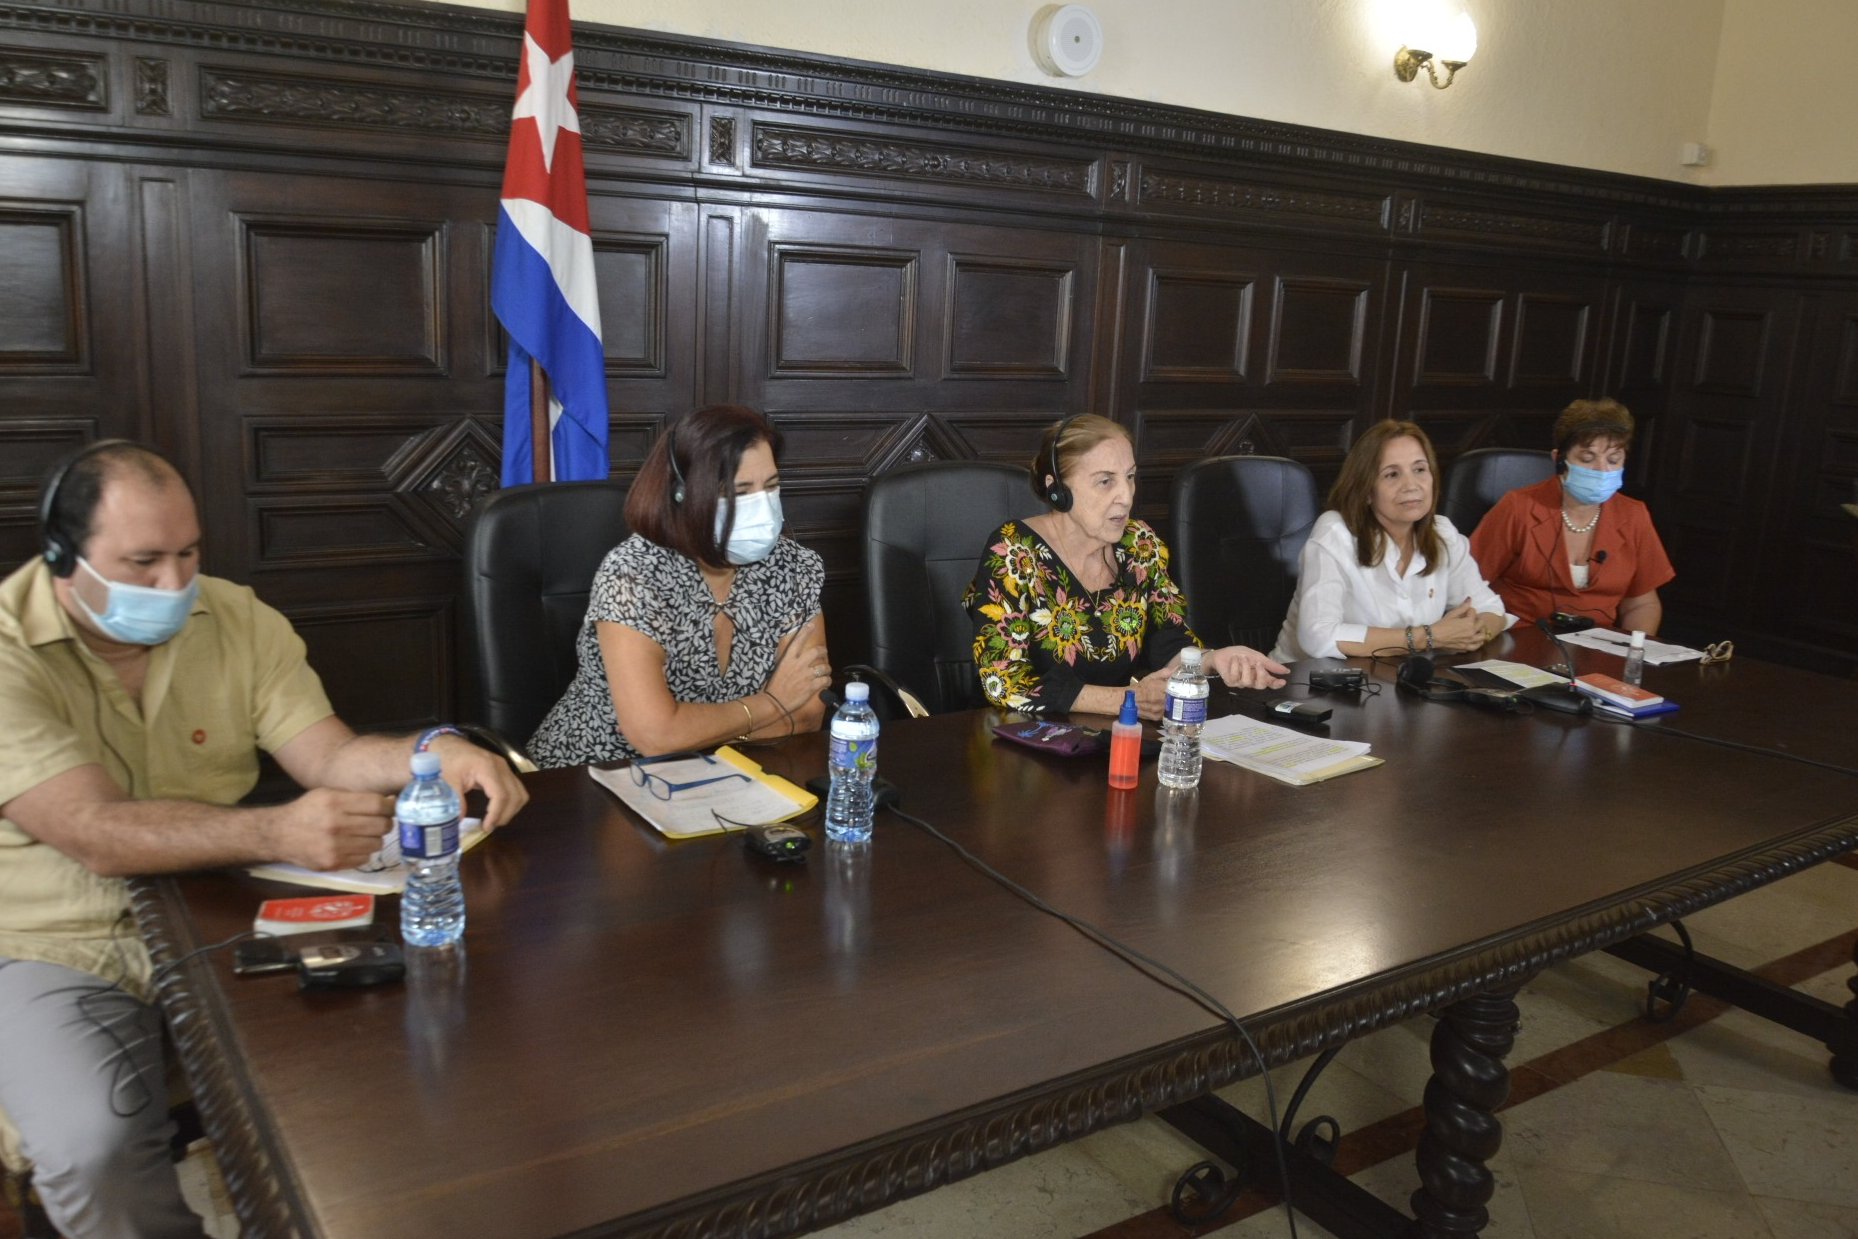 La diputada Ana María Mari Machado, vicepresidenta de la Asamblea Nacional (segunda de derecha a izquierda), saludó a los presentes y dijo que encuentros como este permiten abordar temas de interés común para el desarrollo y bienestar de nuestros pueblos